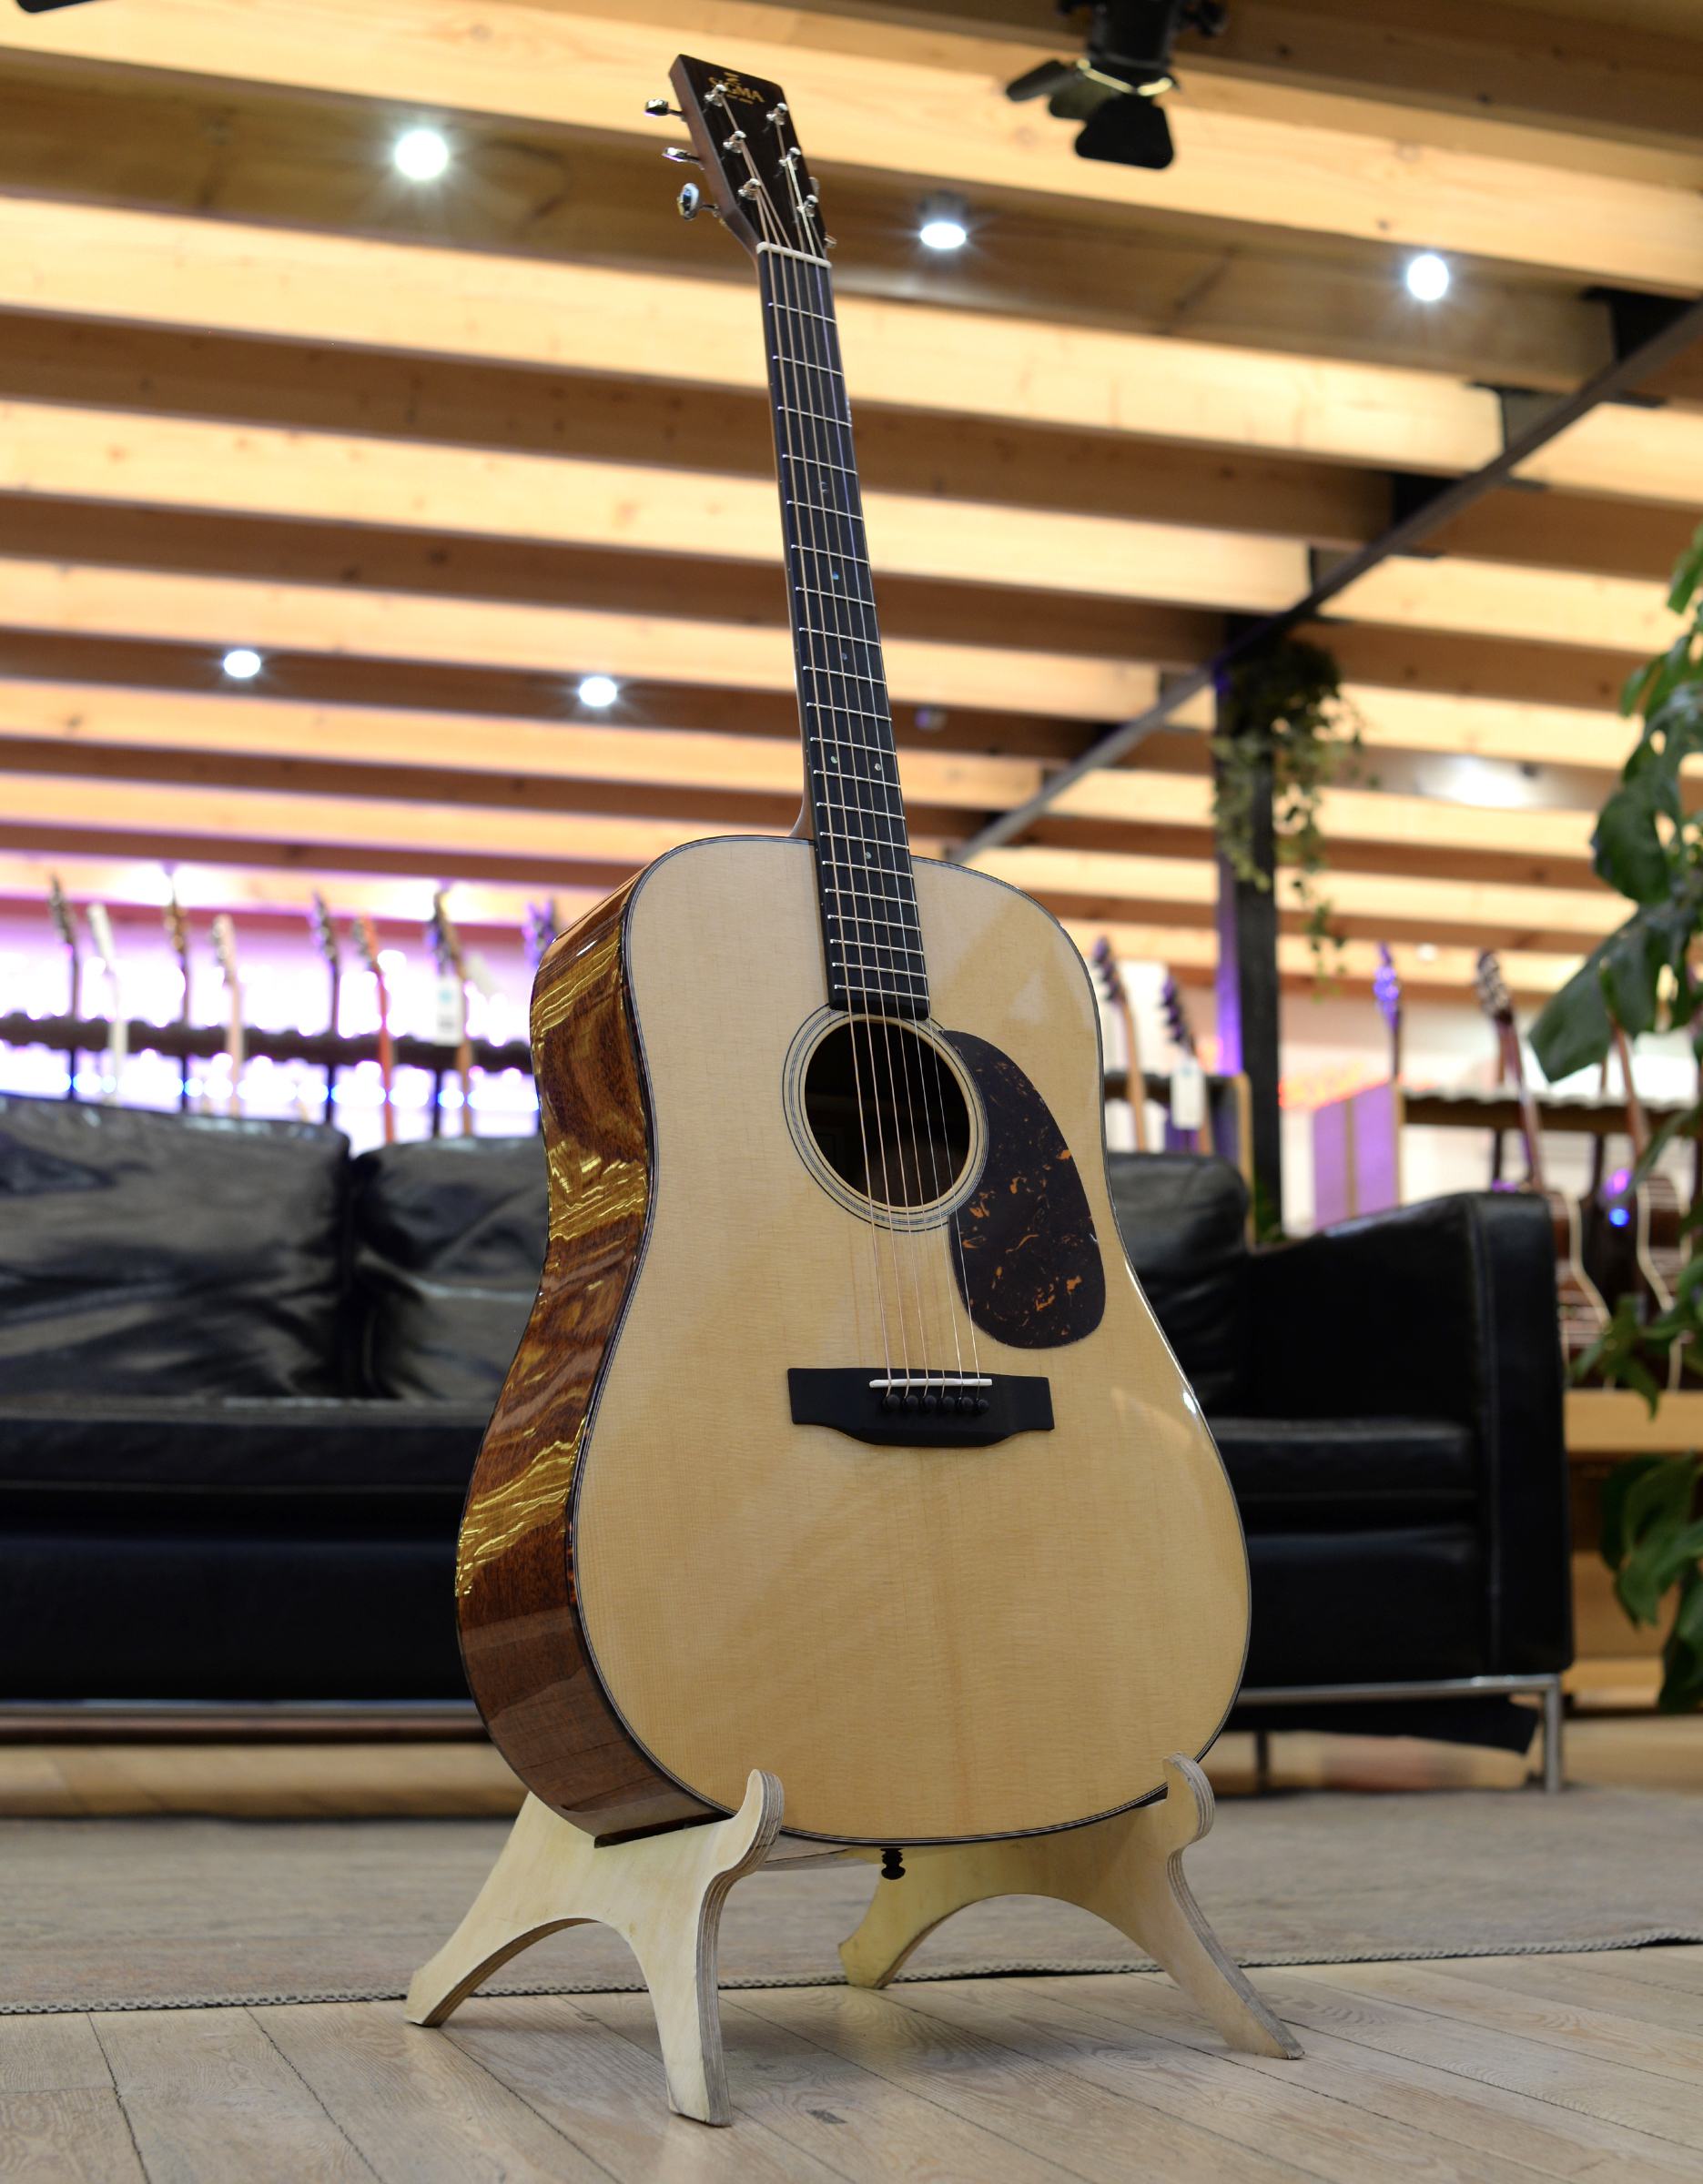 Акустическая гитара Sigma SDM-18 - купить в "Гитарном Клубе"